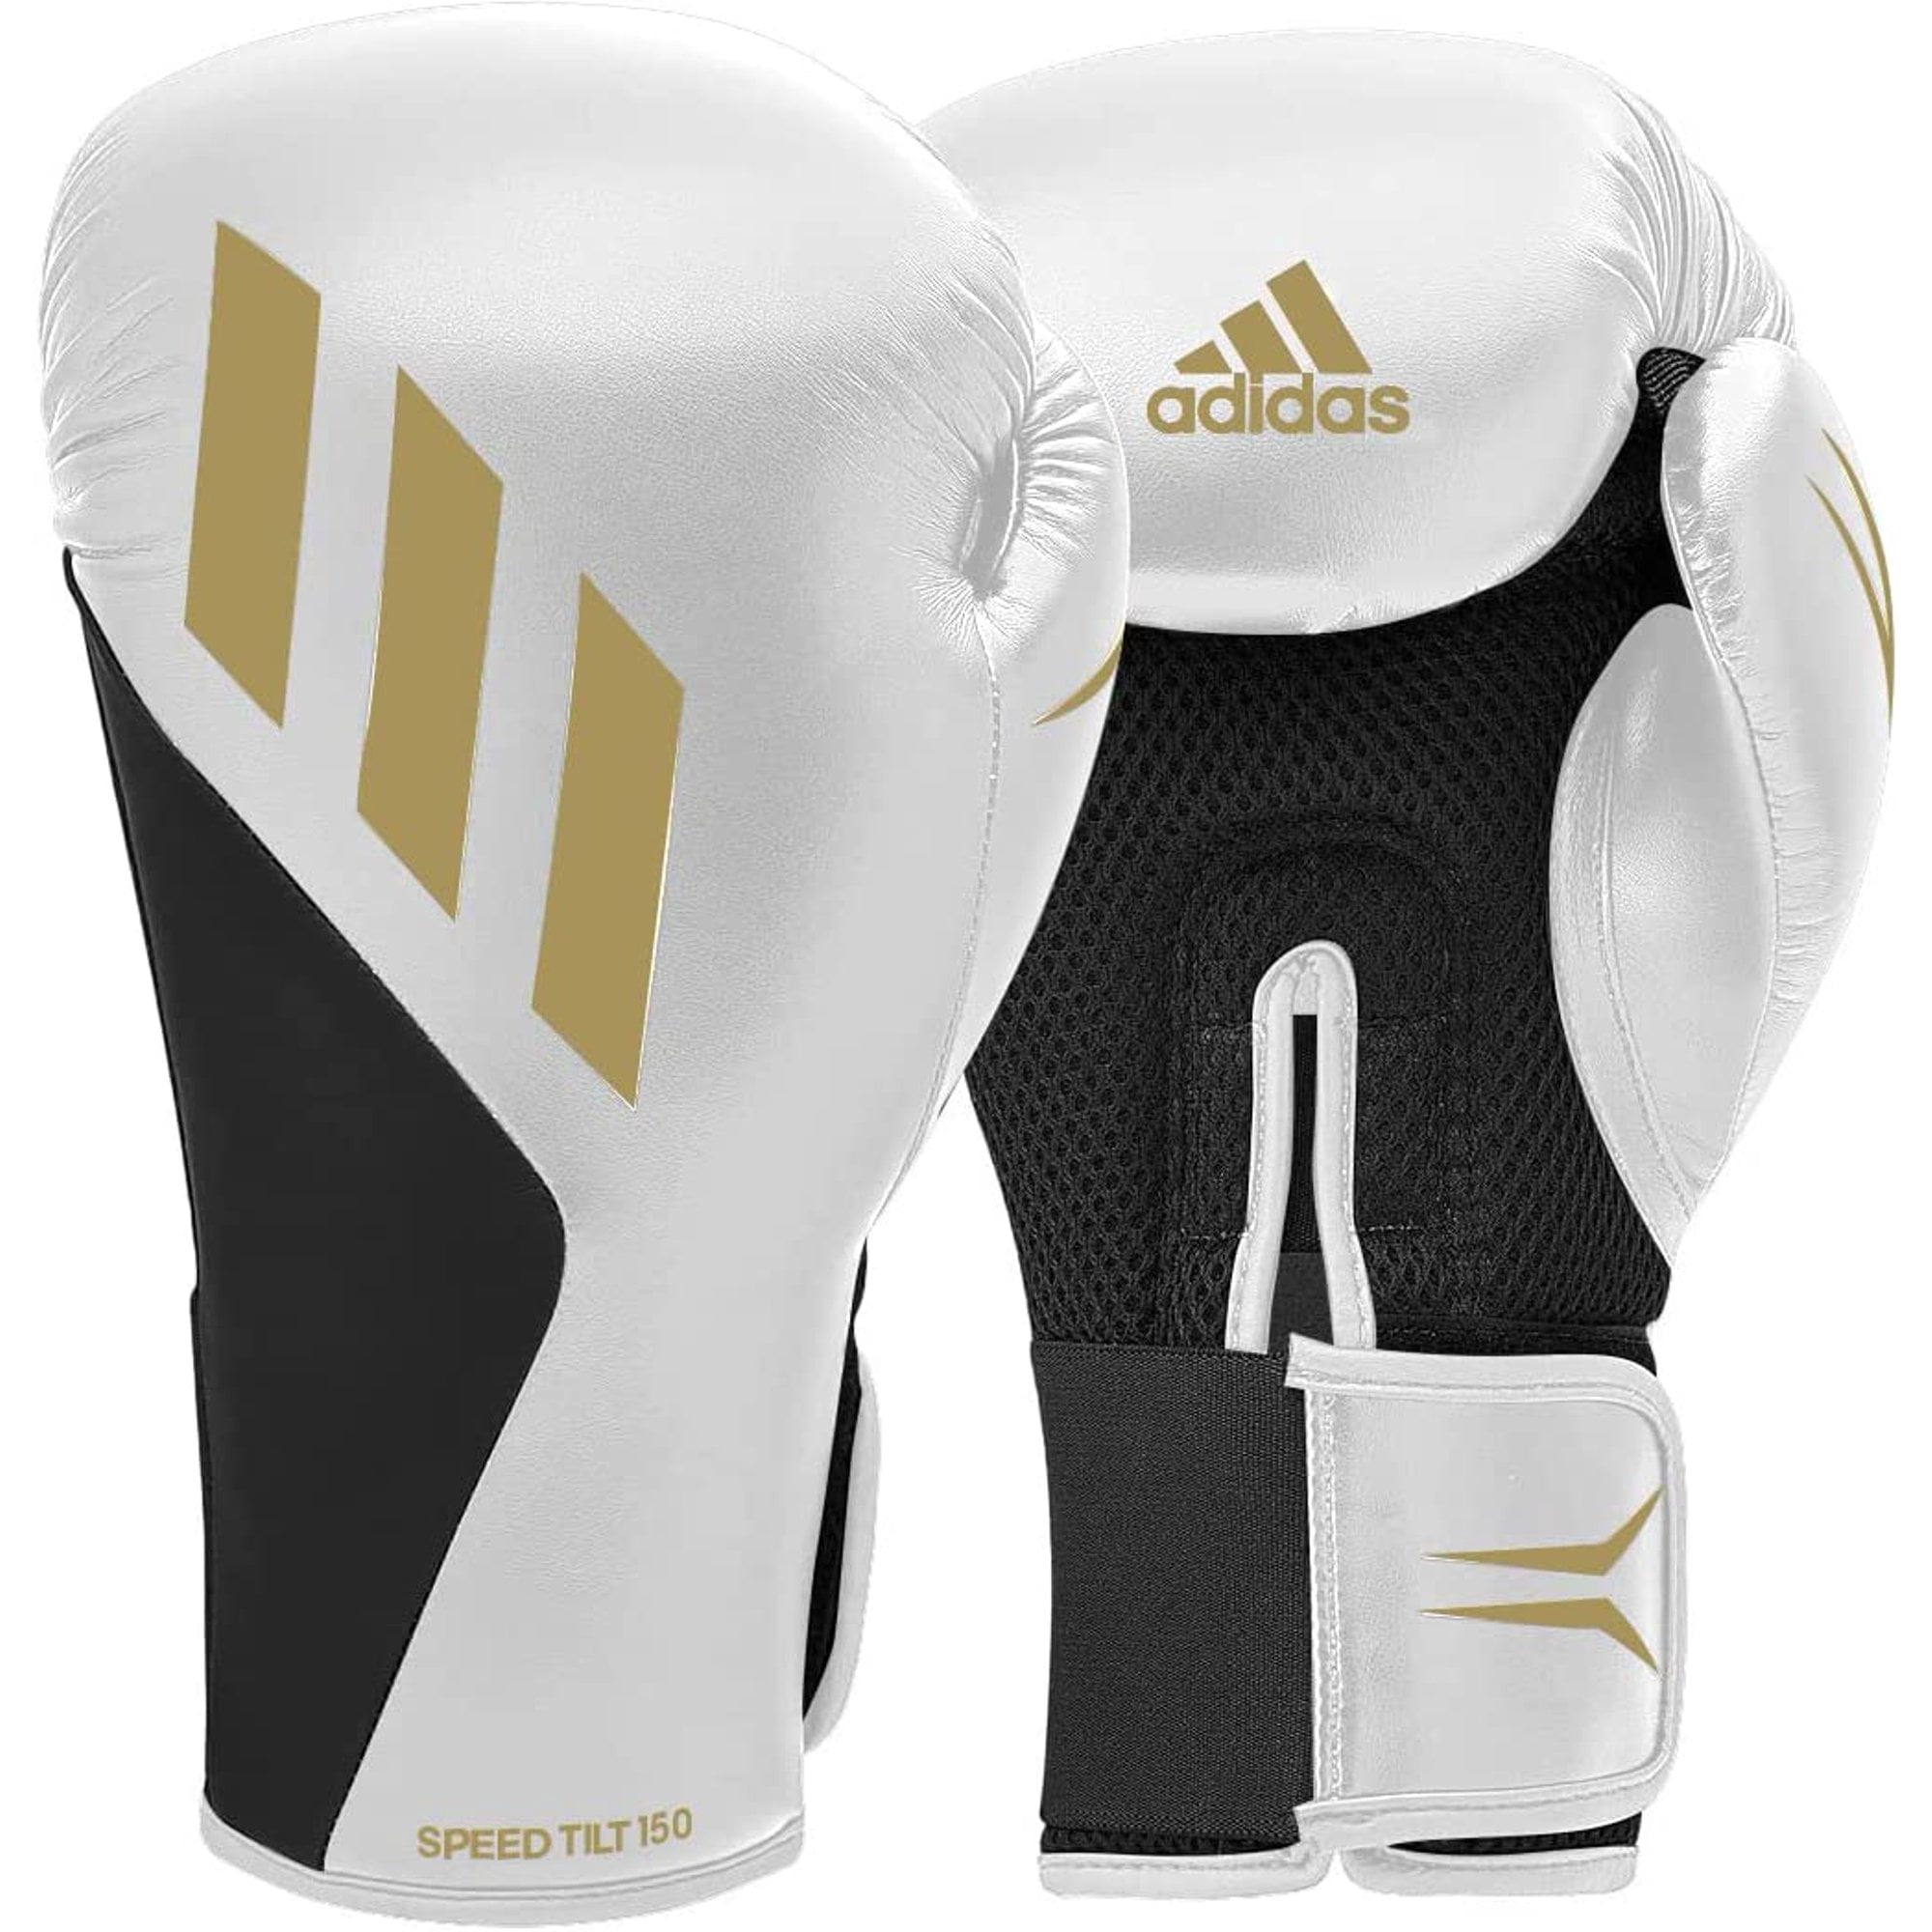 Adidas Speed TILT 150 Boxing Gloves - Training and Fighting Gloves for Men,  Women, Unisex, White/Gold/Black, 10oz